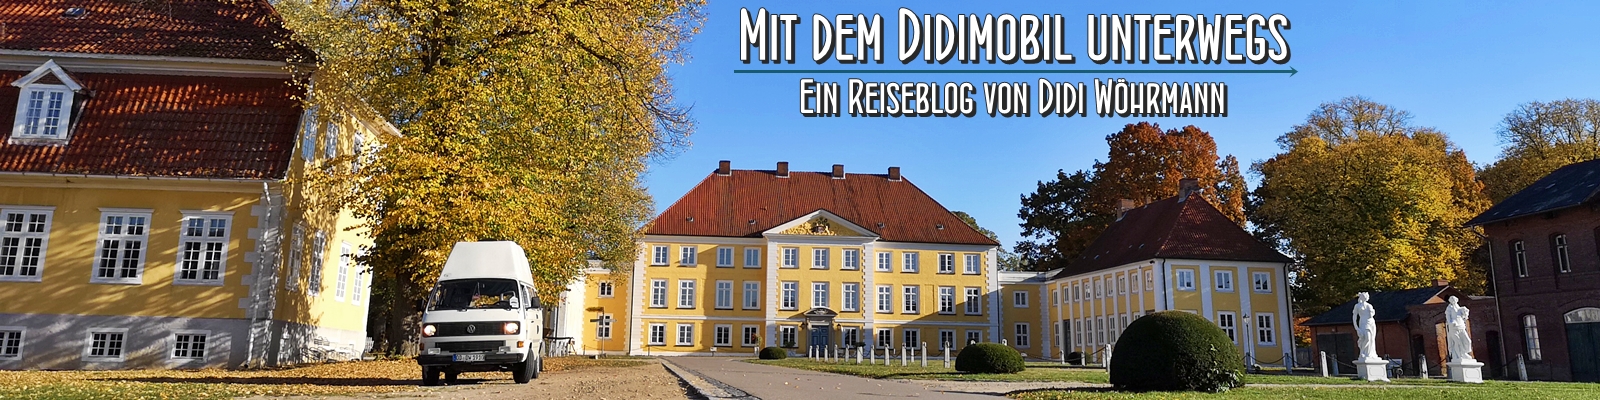 Mit dem Didimobil unterwegs - Ein Reiseblog von Didi Wöhrmann